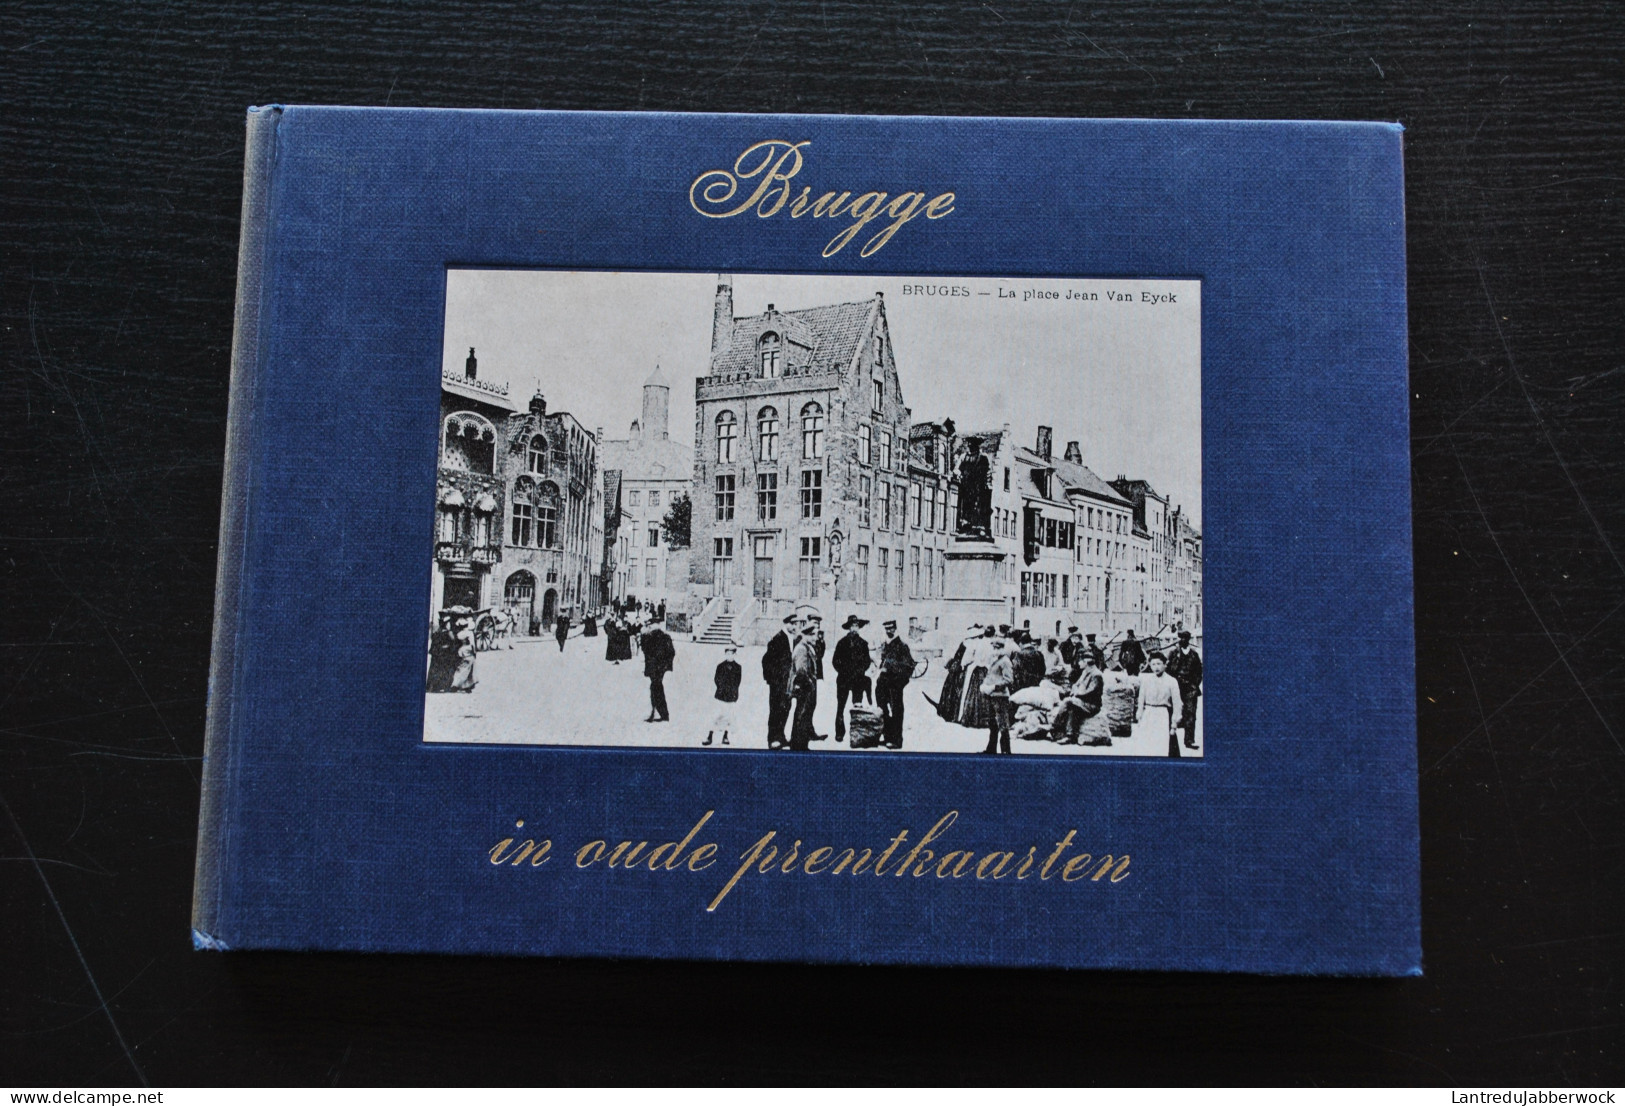 BRUGGE In Oude Prentkaarten Régionalisme Kruispoort Dampoort Van Eyckplein 14 18 Oorlog Bruges Cartes Postales Anciennes - Bélgica